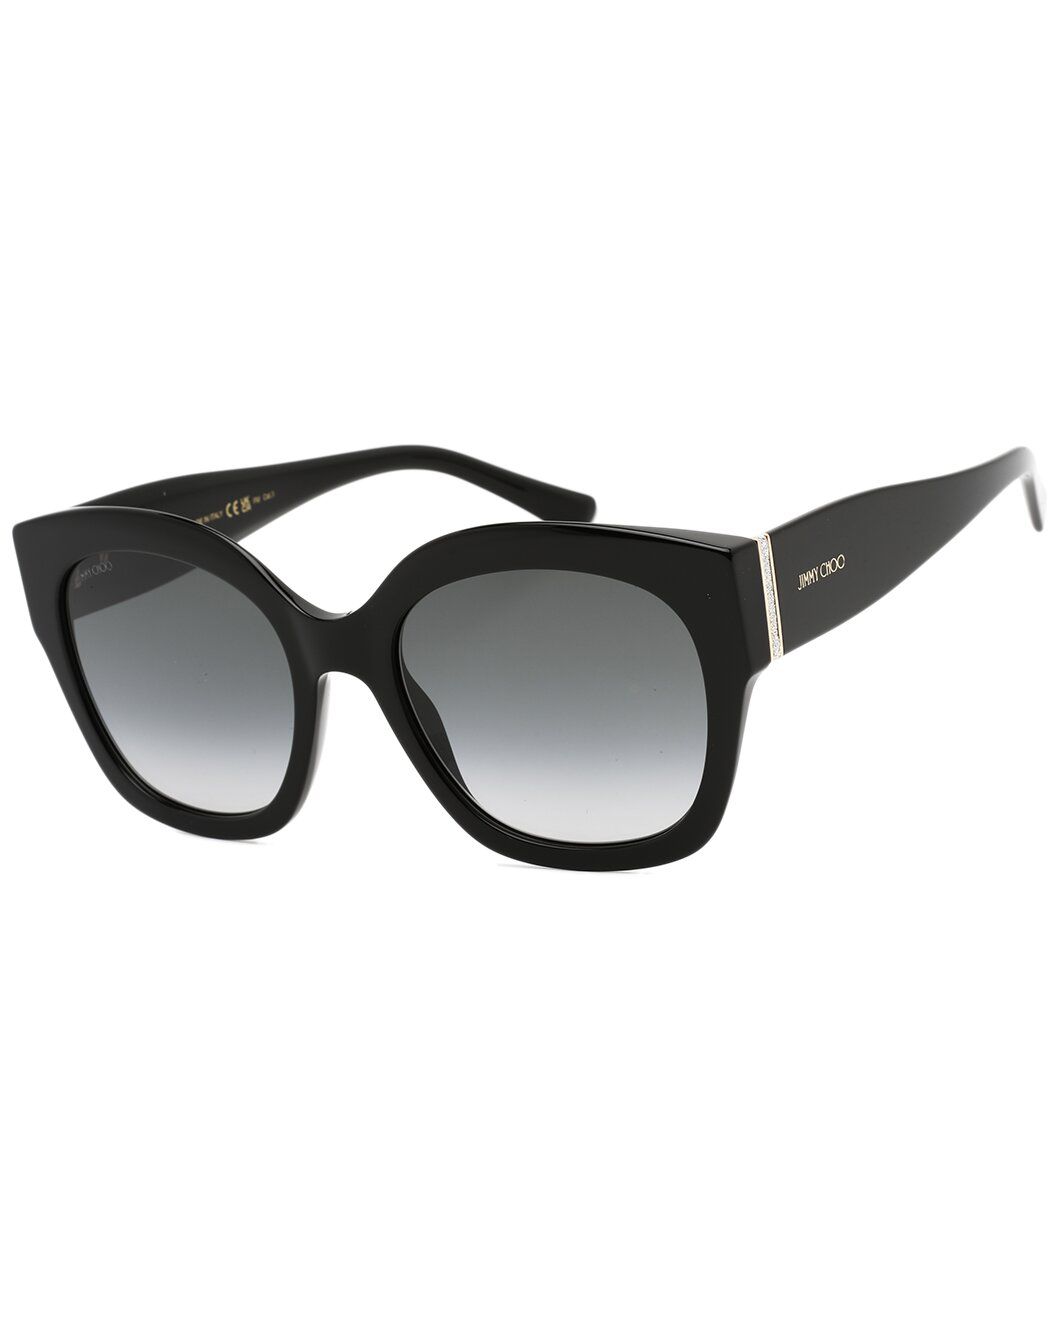 Women's LEELA/S 55mm Sunglasses | Gilt & Gilt City